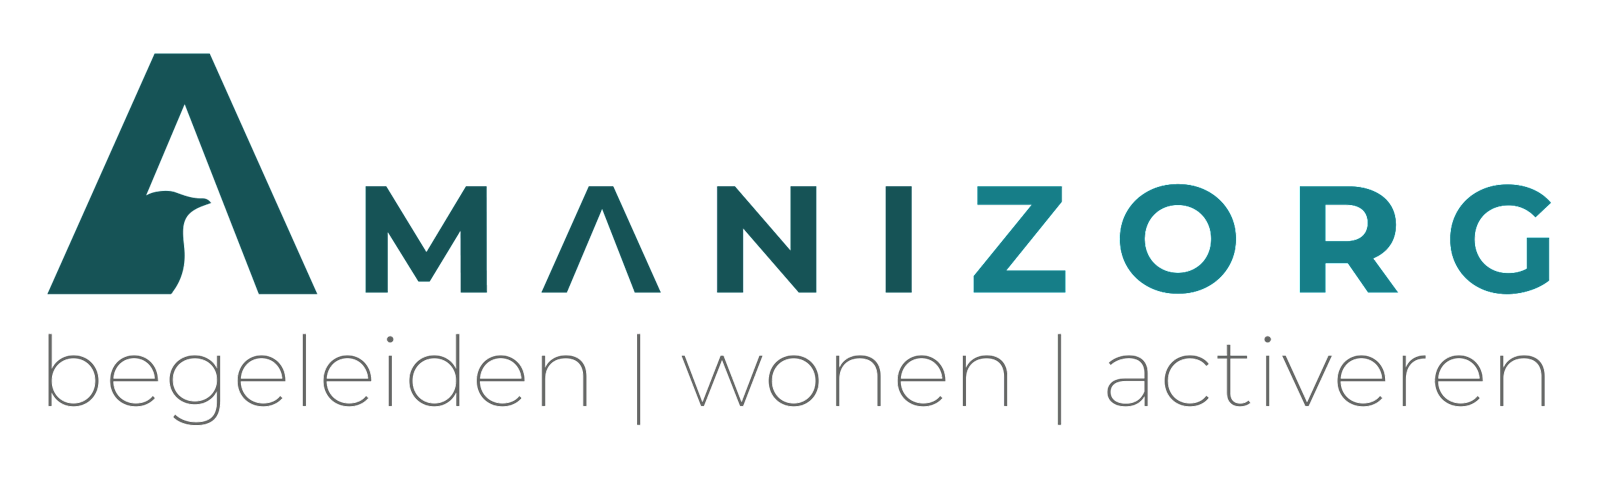 Amanizorg logo